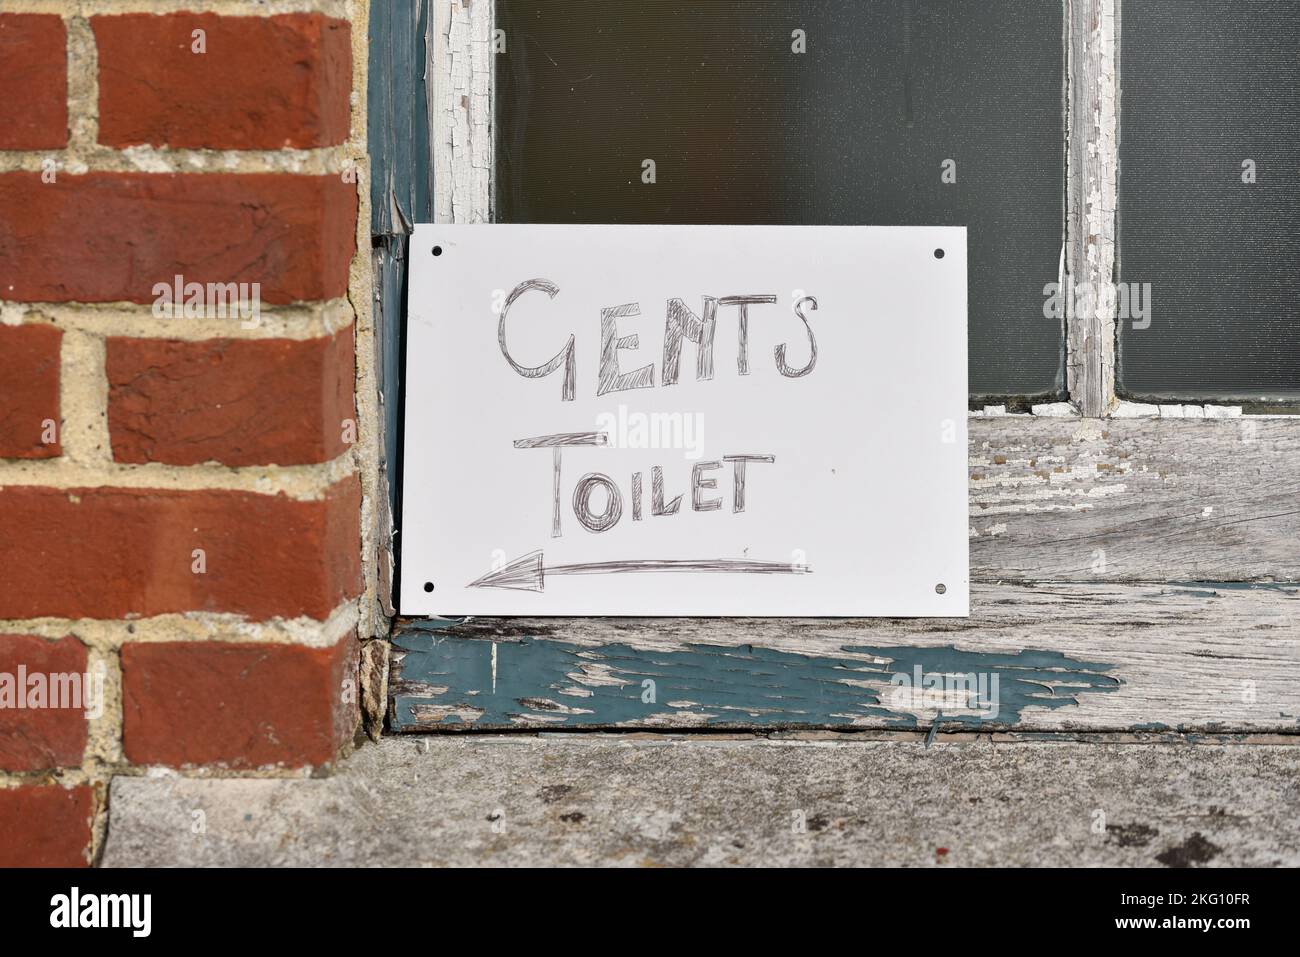 Panneau écrit à la main hâtivement menant aux toilettes de gents Banque D'Images